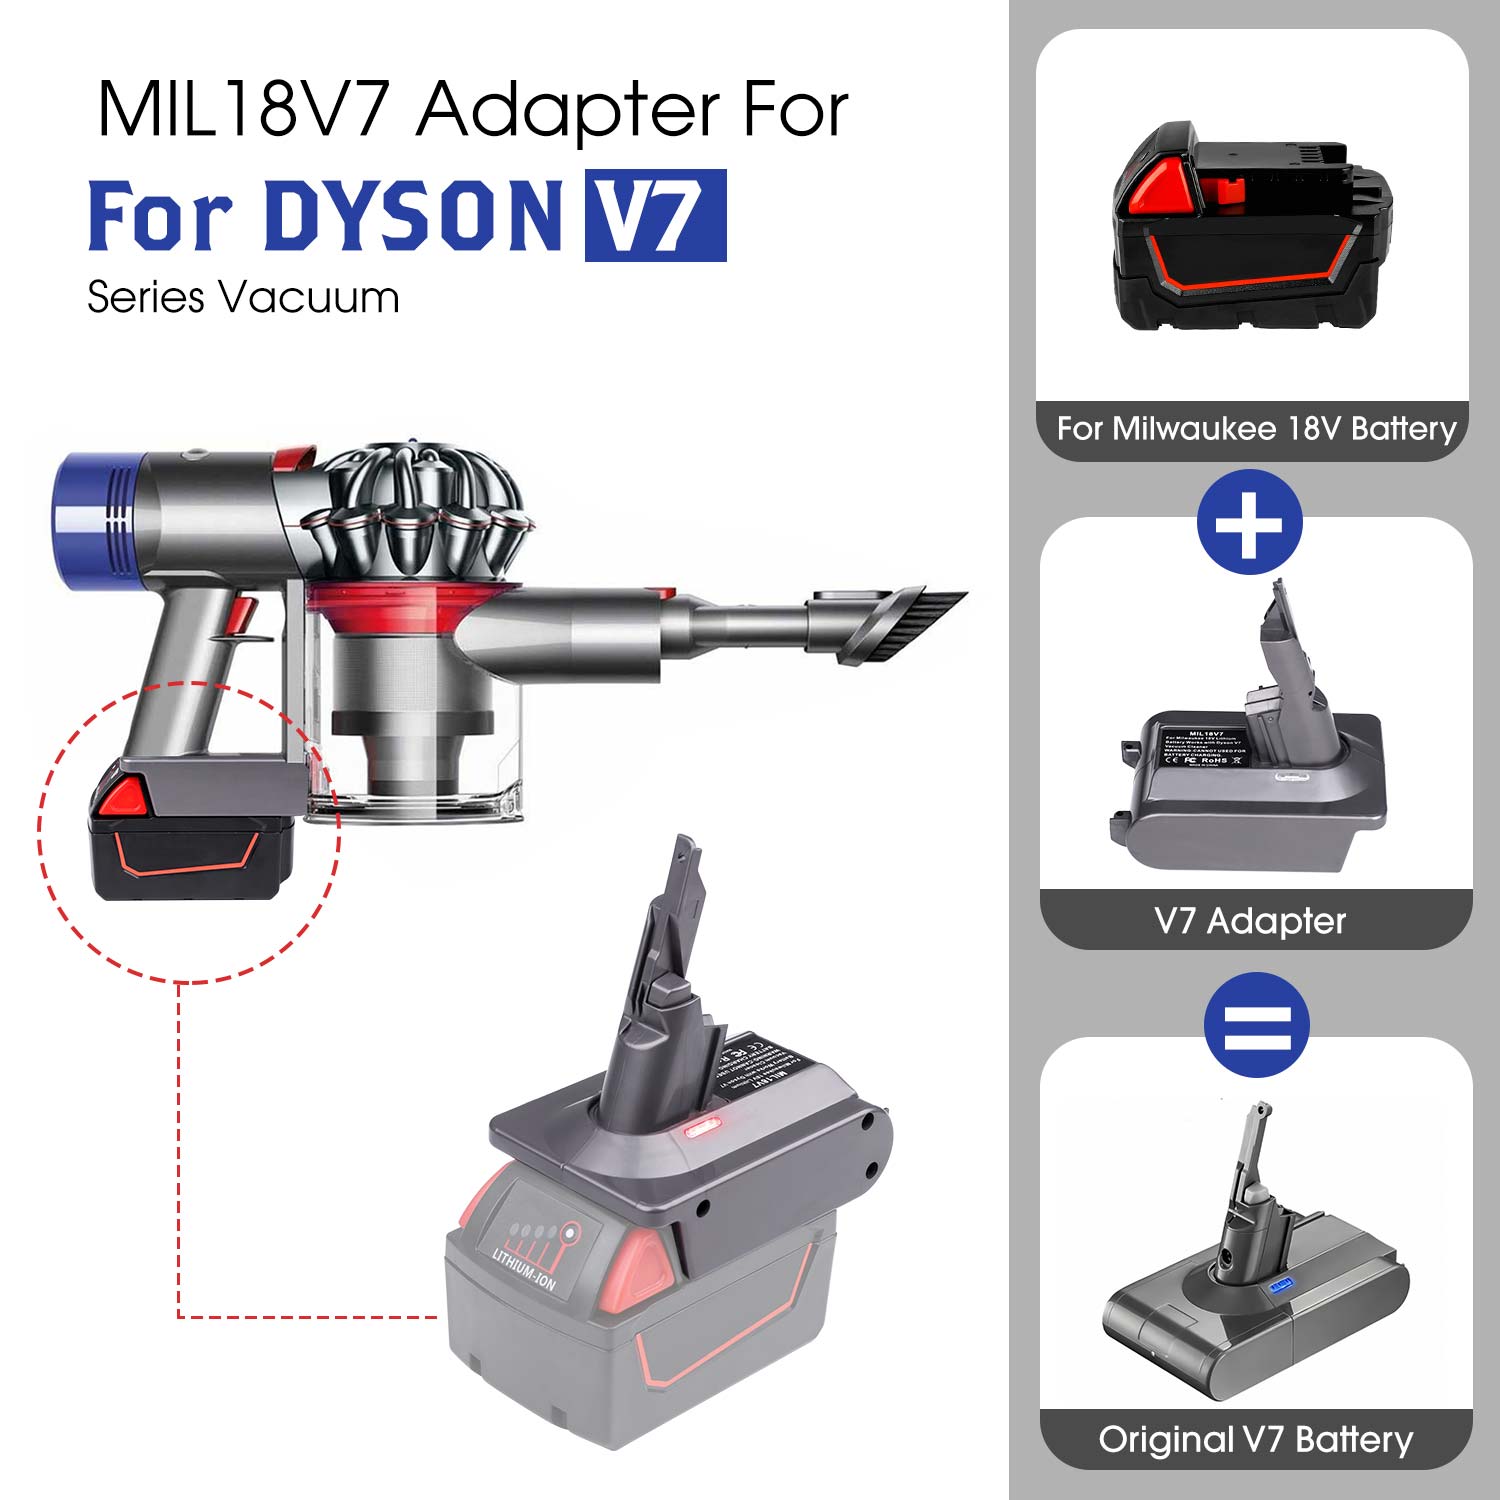 Vir Dyson V7 Adapter vir Milwaukee M18 18V Lithium Battery Converter na Dyson V7, gebruik vir Dyson V7 Stofsuier